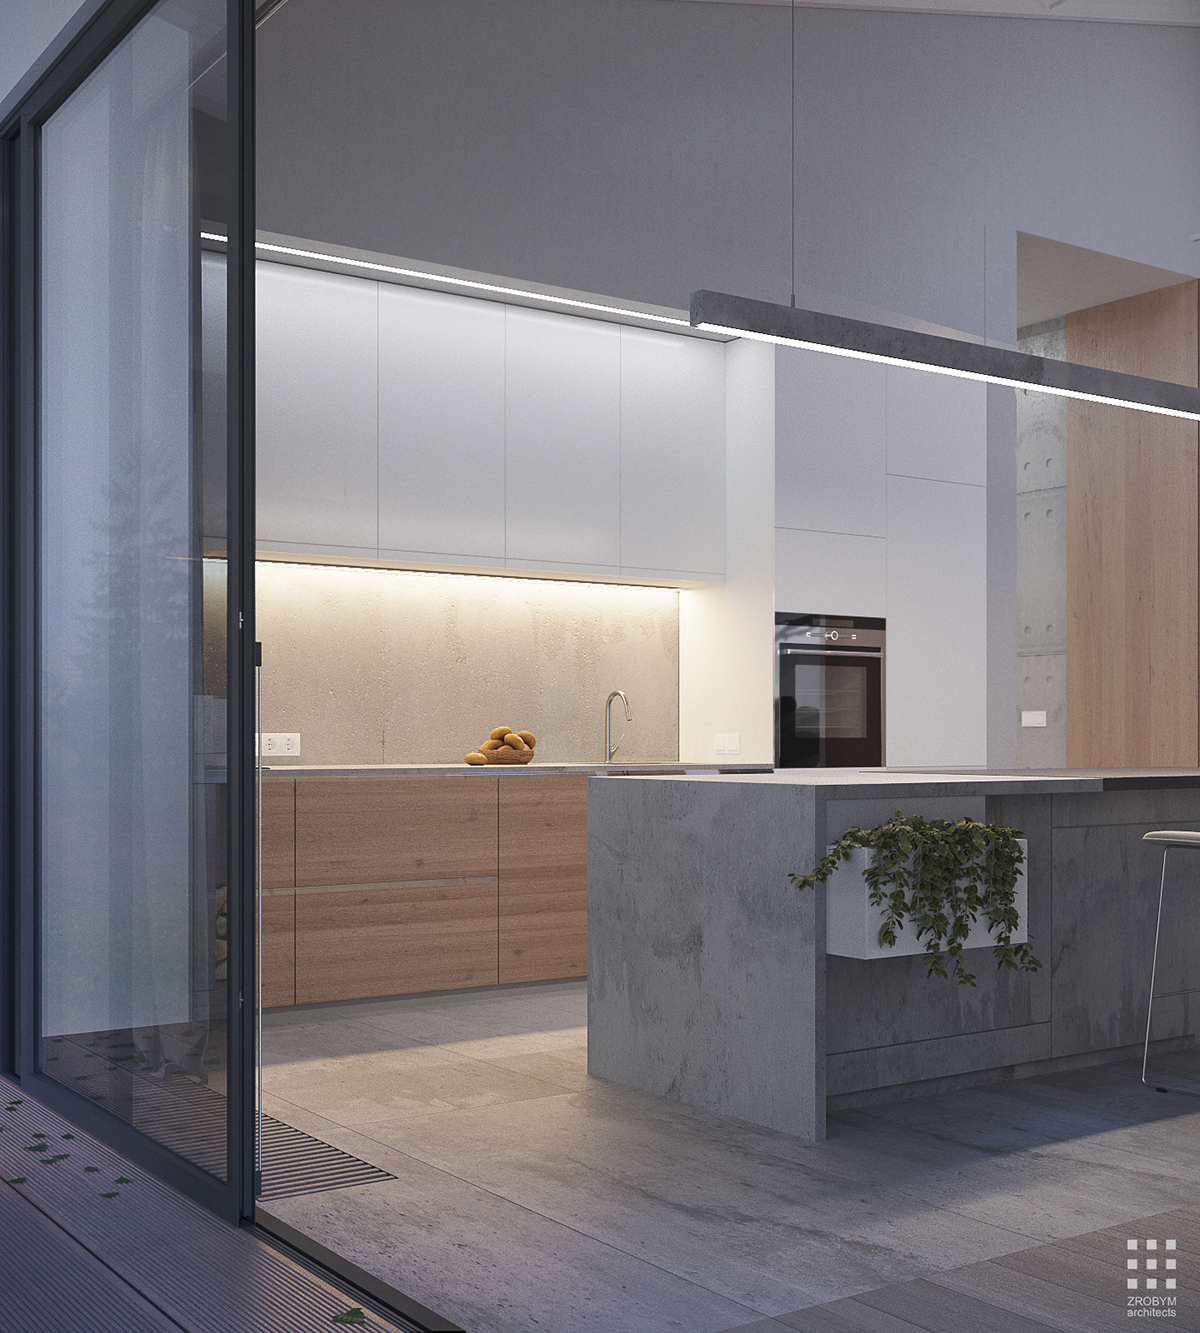 concrete Interior interiordesign concreteinterior 3D 3d max minsk belarus zrobym arhitects